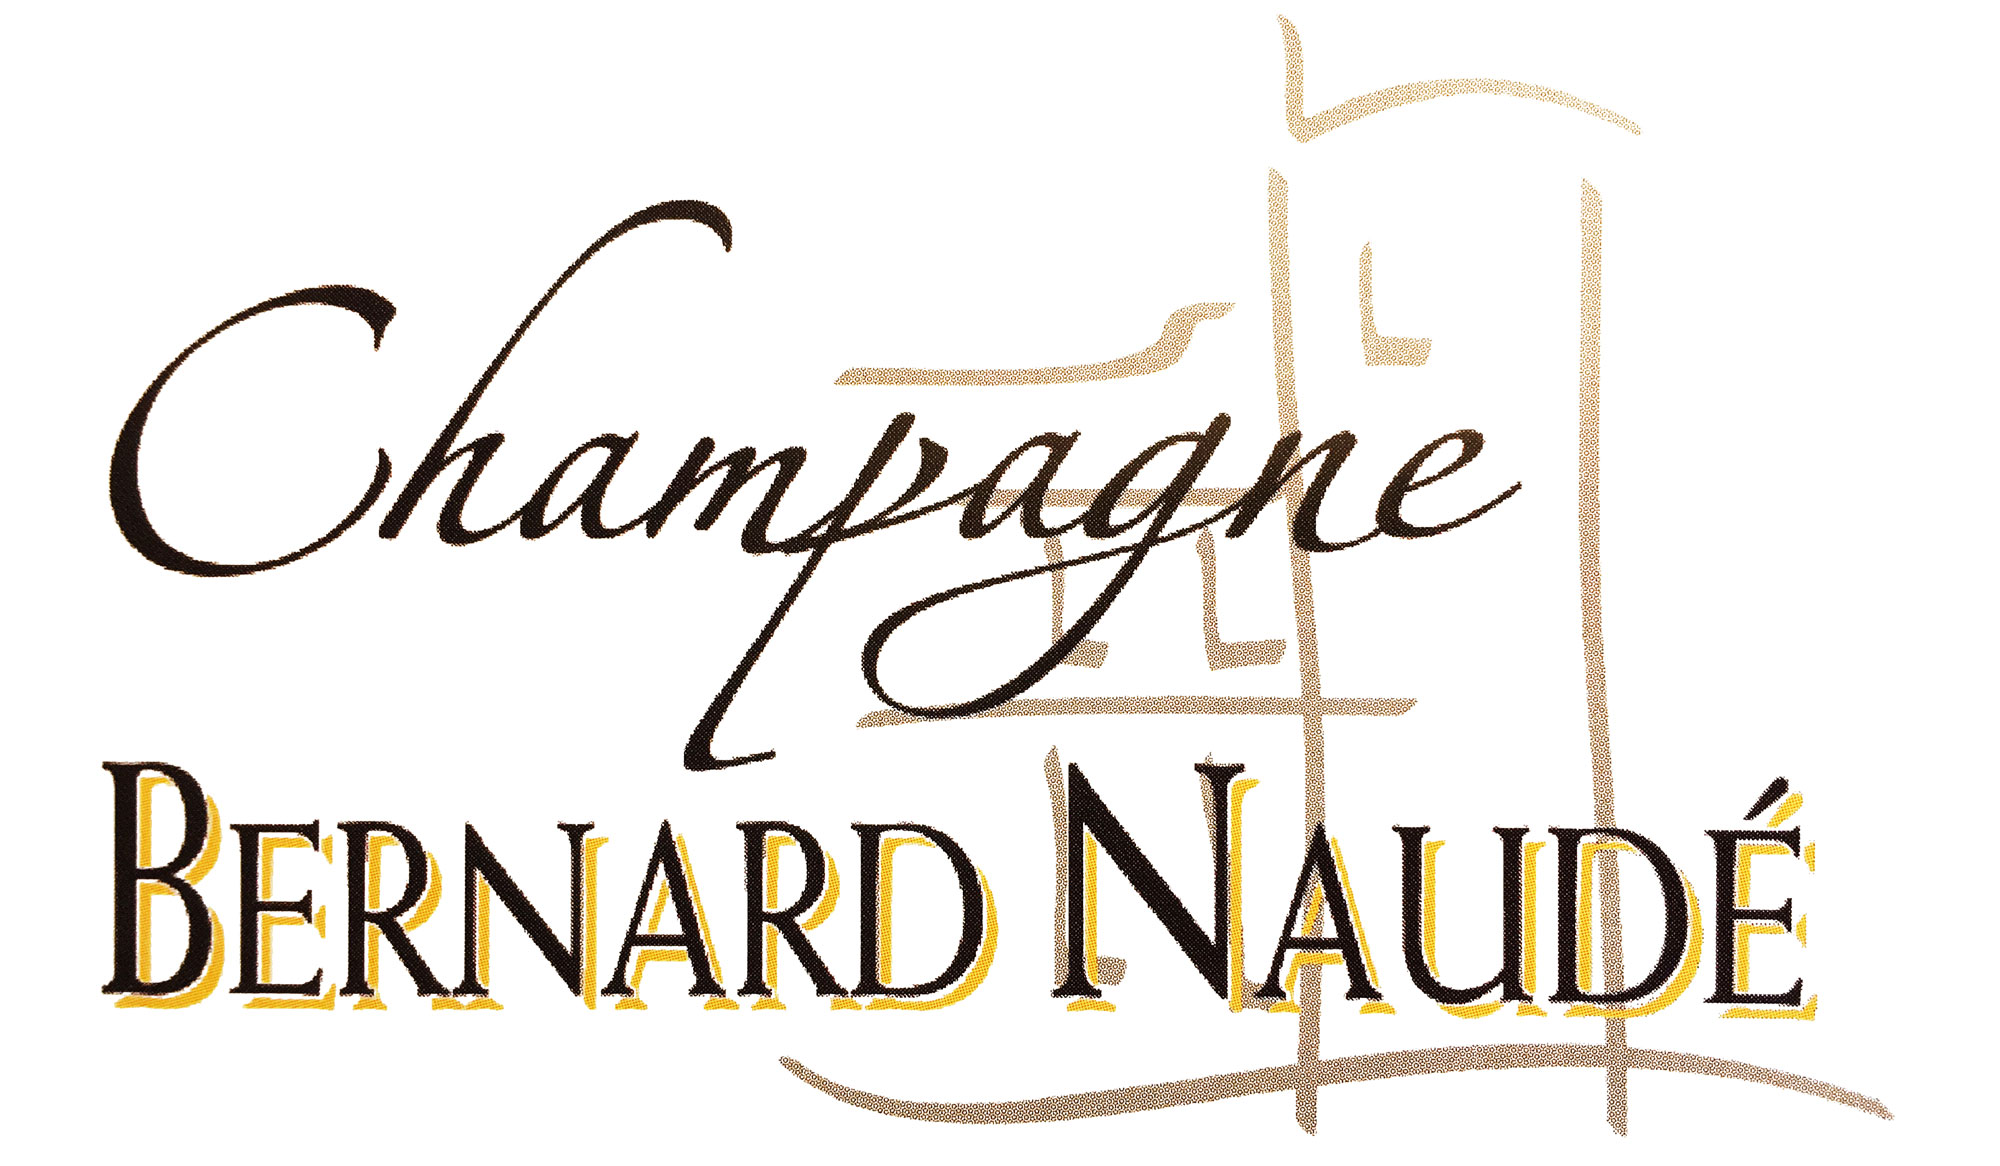 Champagne Bernard Naudé